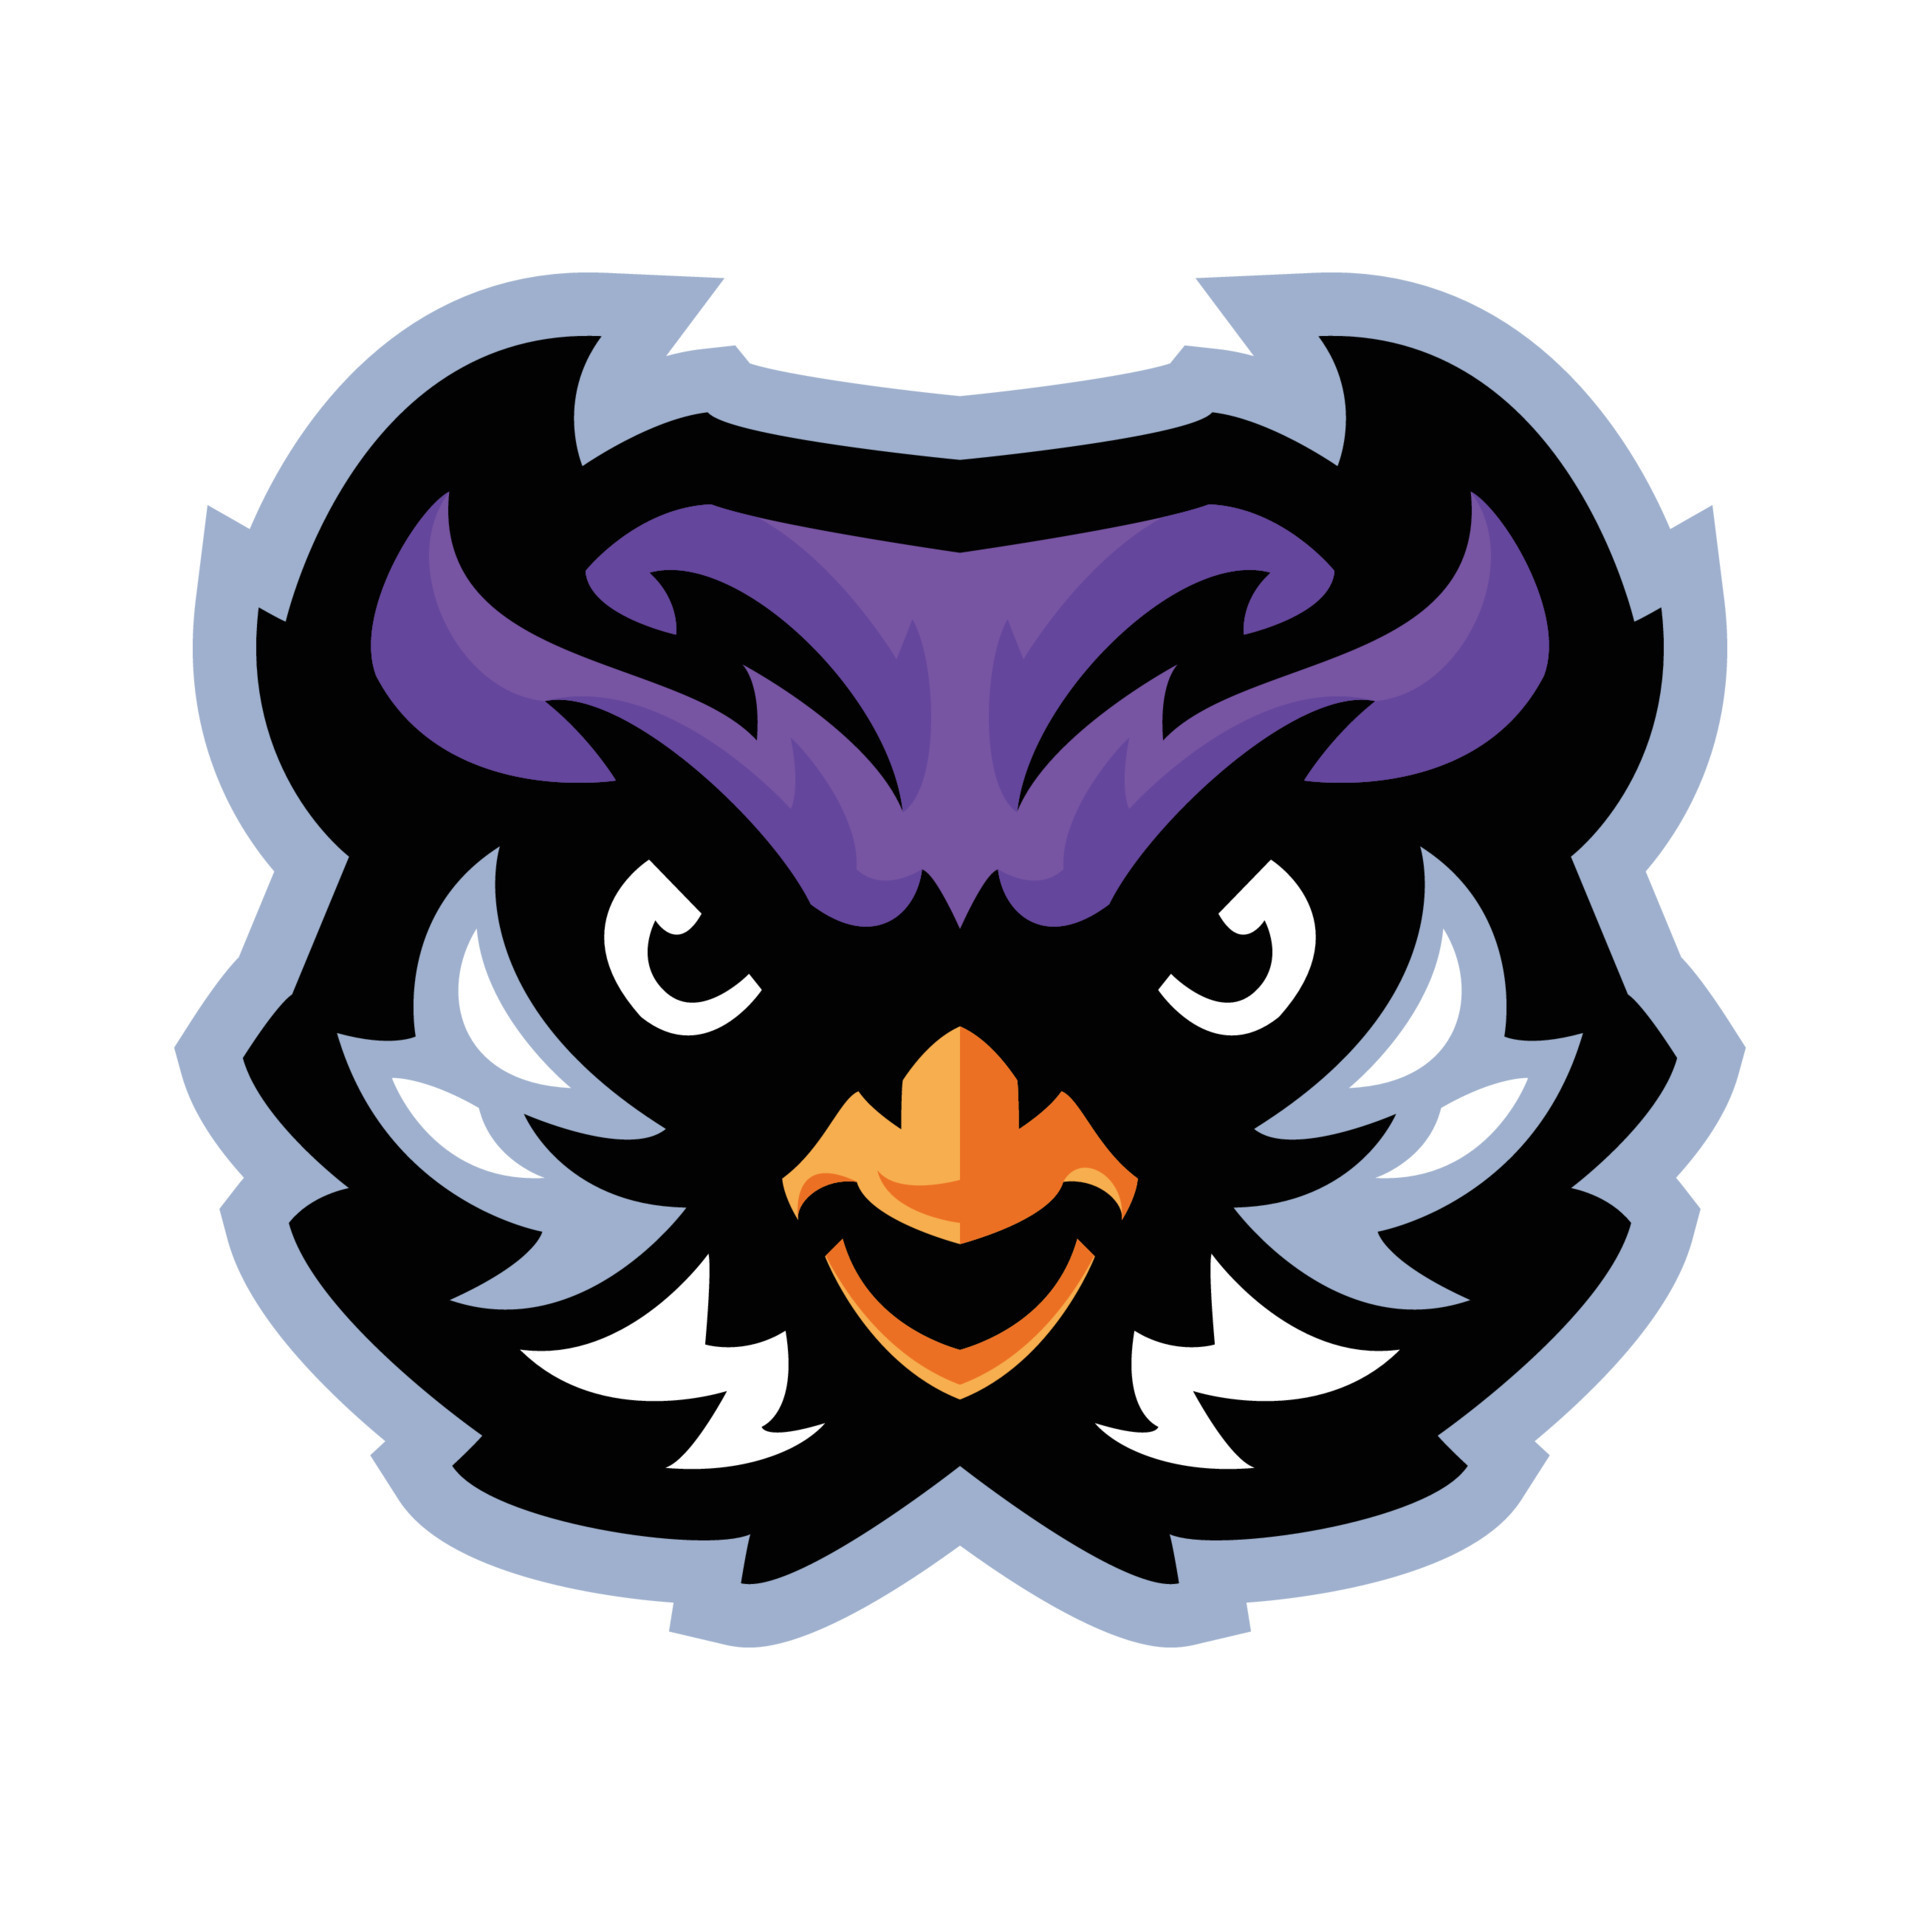 uil mascotte logo voor sport- teams merken 21672559 Vectorkunst bij Vecteezy